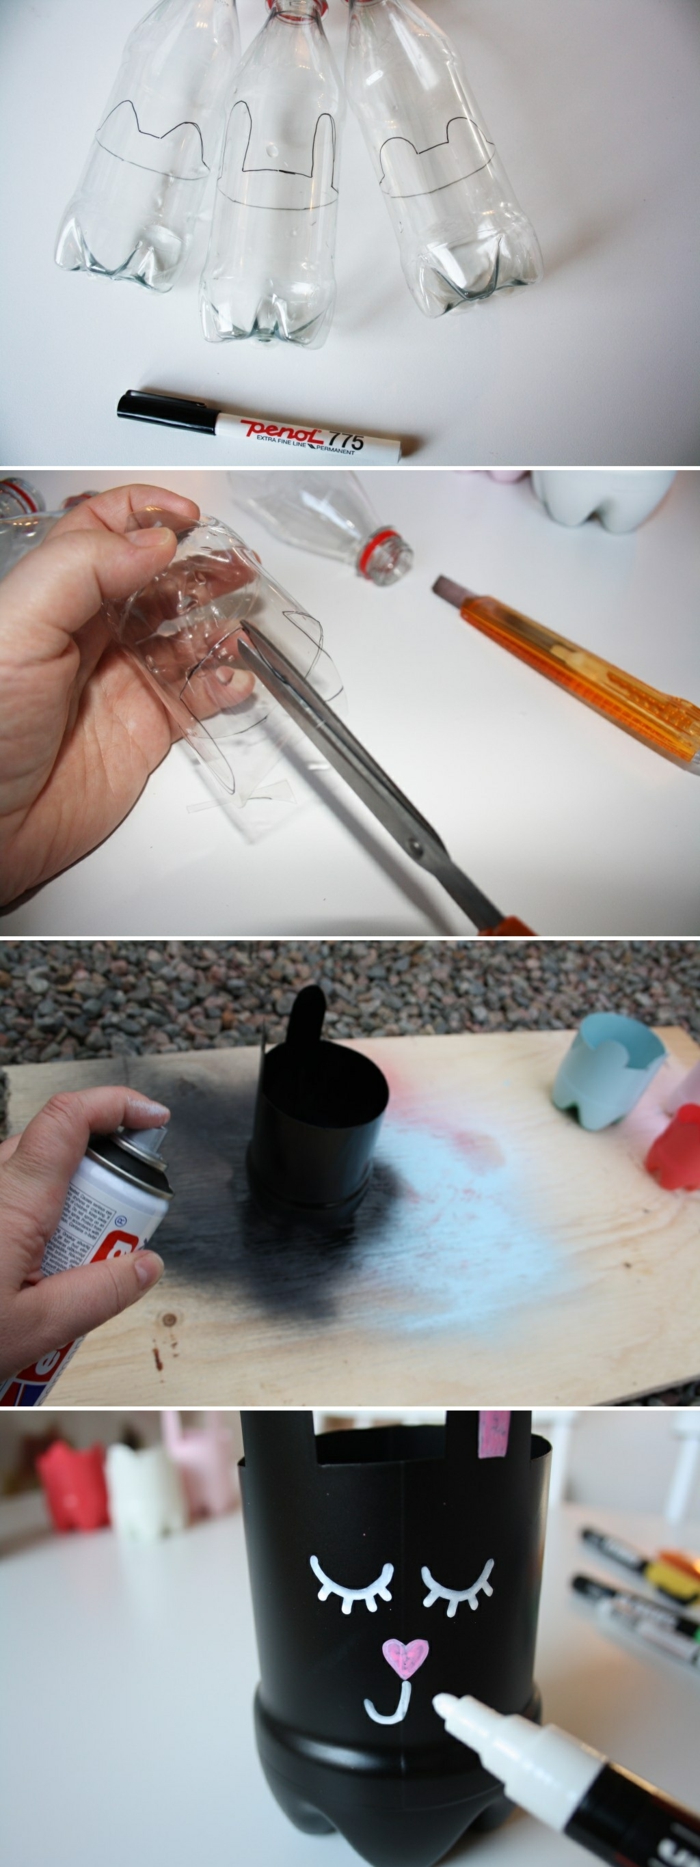 يشكل حامل قلم رصاص وزجاجة قطع مع مقص وأرنب ورذاذ أسود